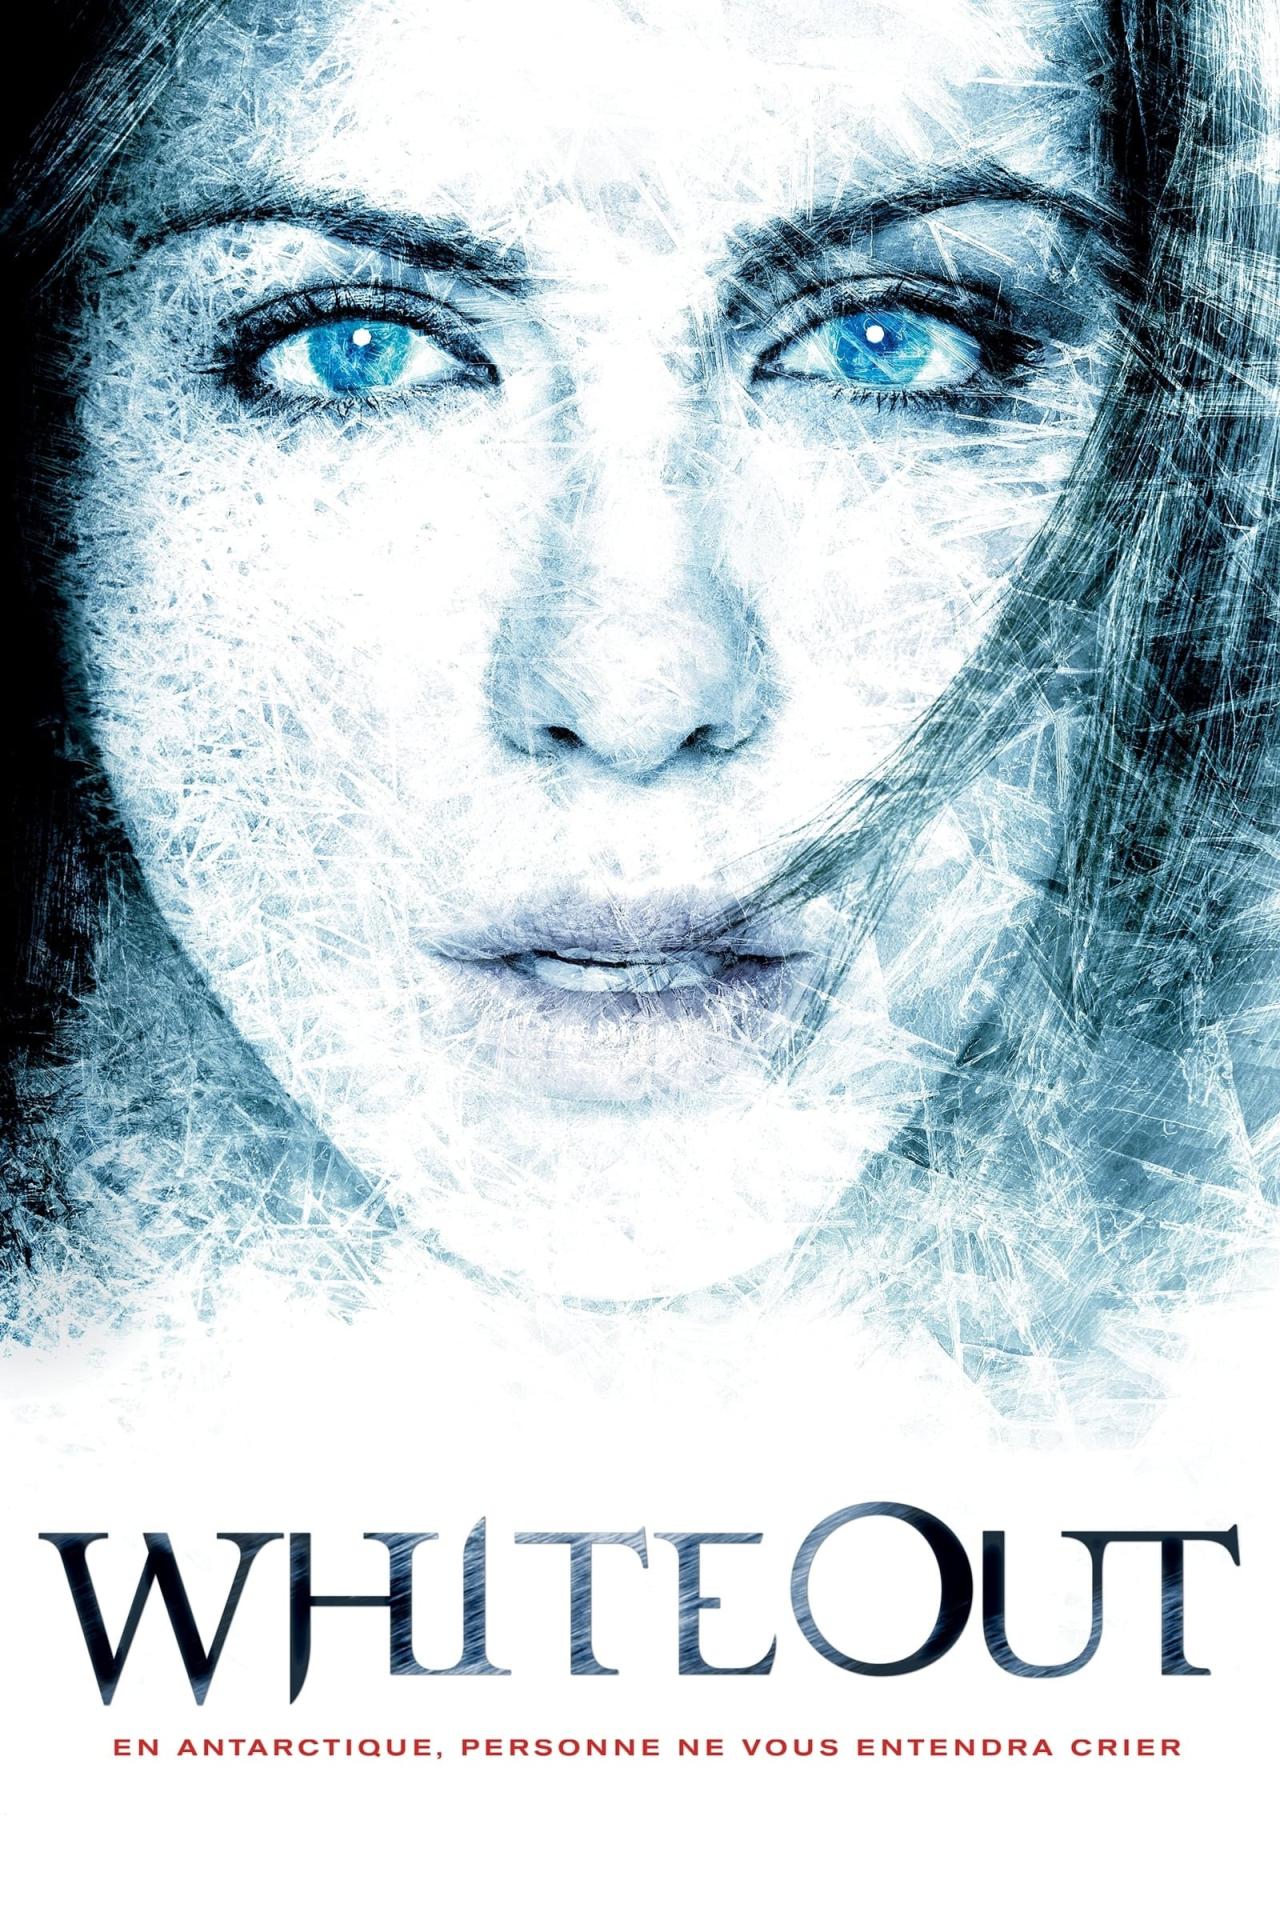 Whiteout est-il disponible sur Netflix ou autre ?